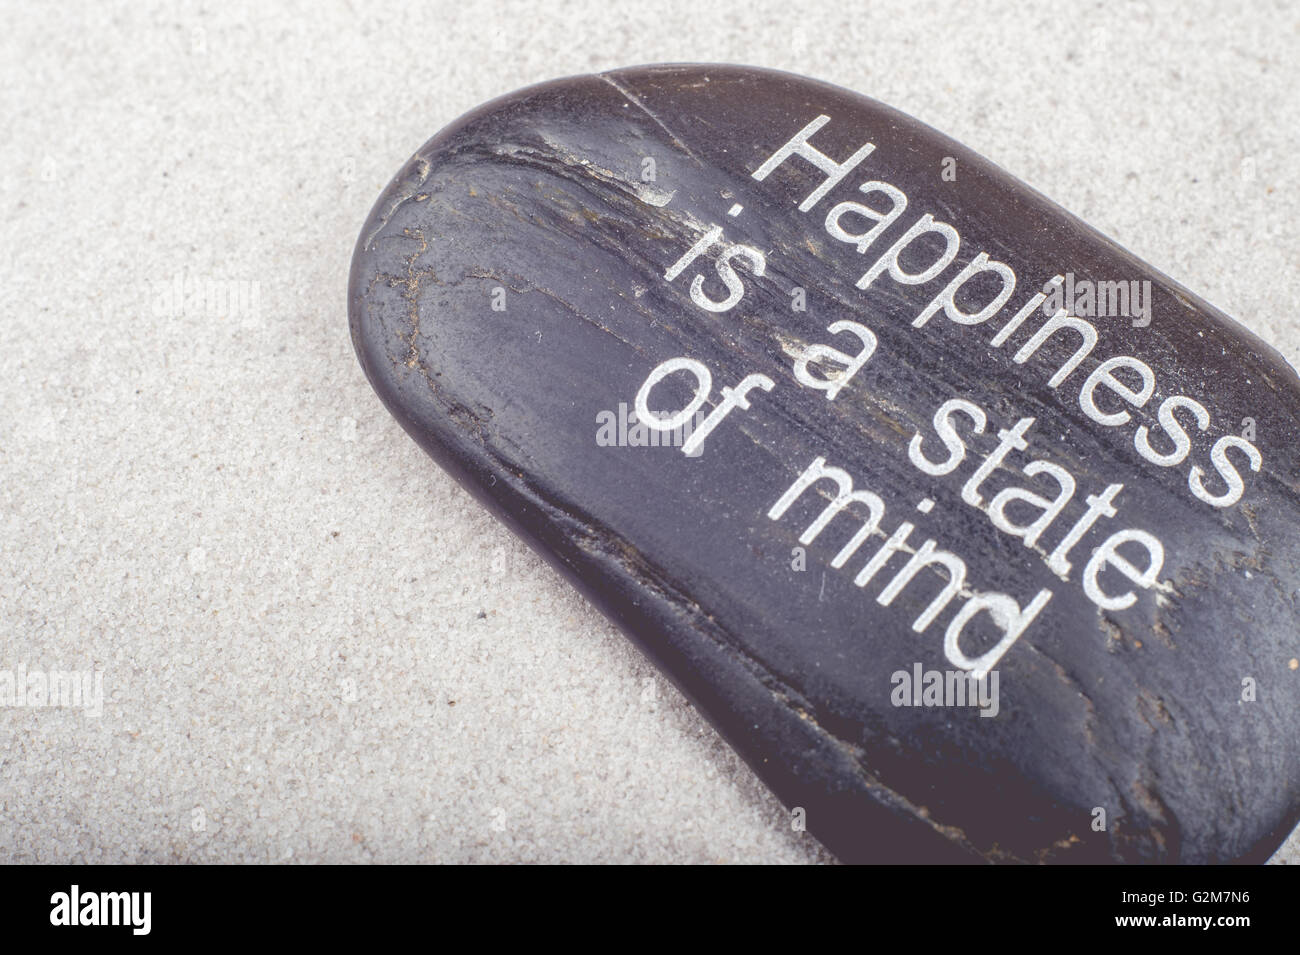 Zen-Bild "Glück ist ein Zustand des Geistes" Nachricht in den Sand auf einem Stein graviert Stockfoto